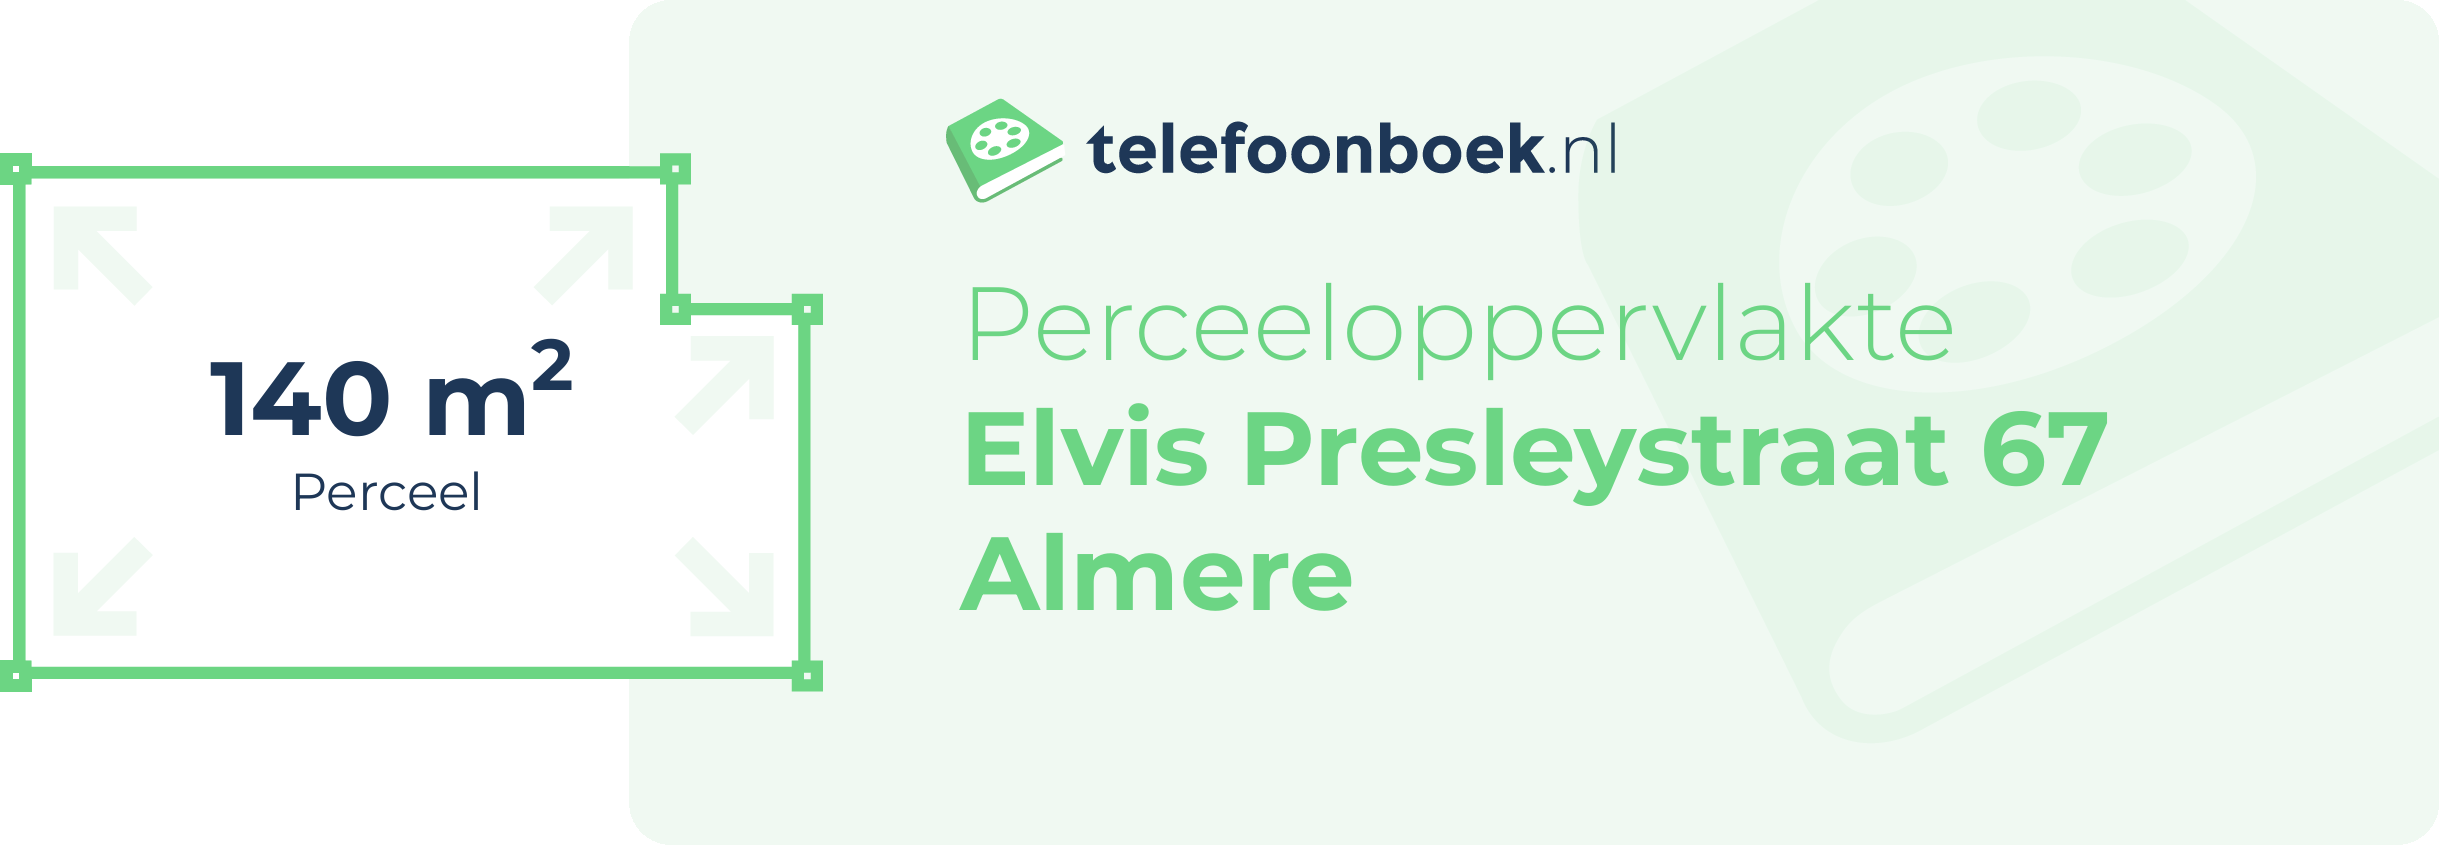 Perceeloppervlakte Elvis Presleystraat 67 Almere